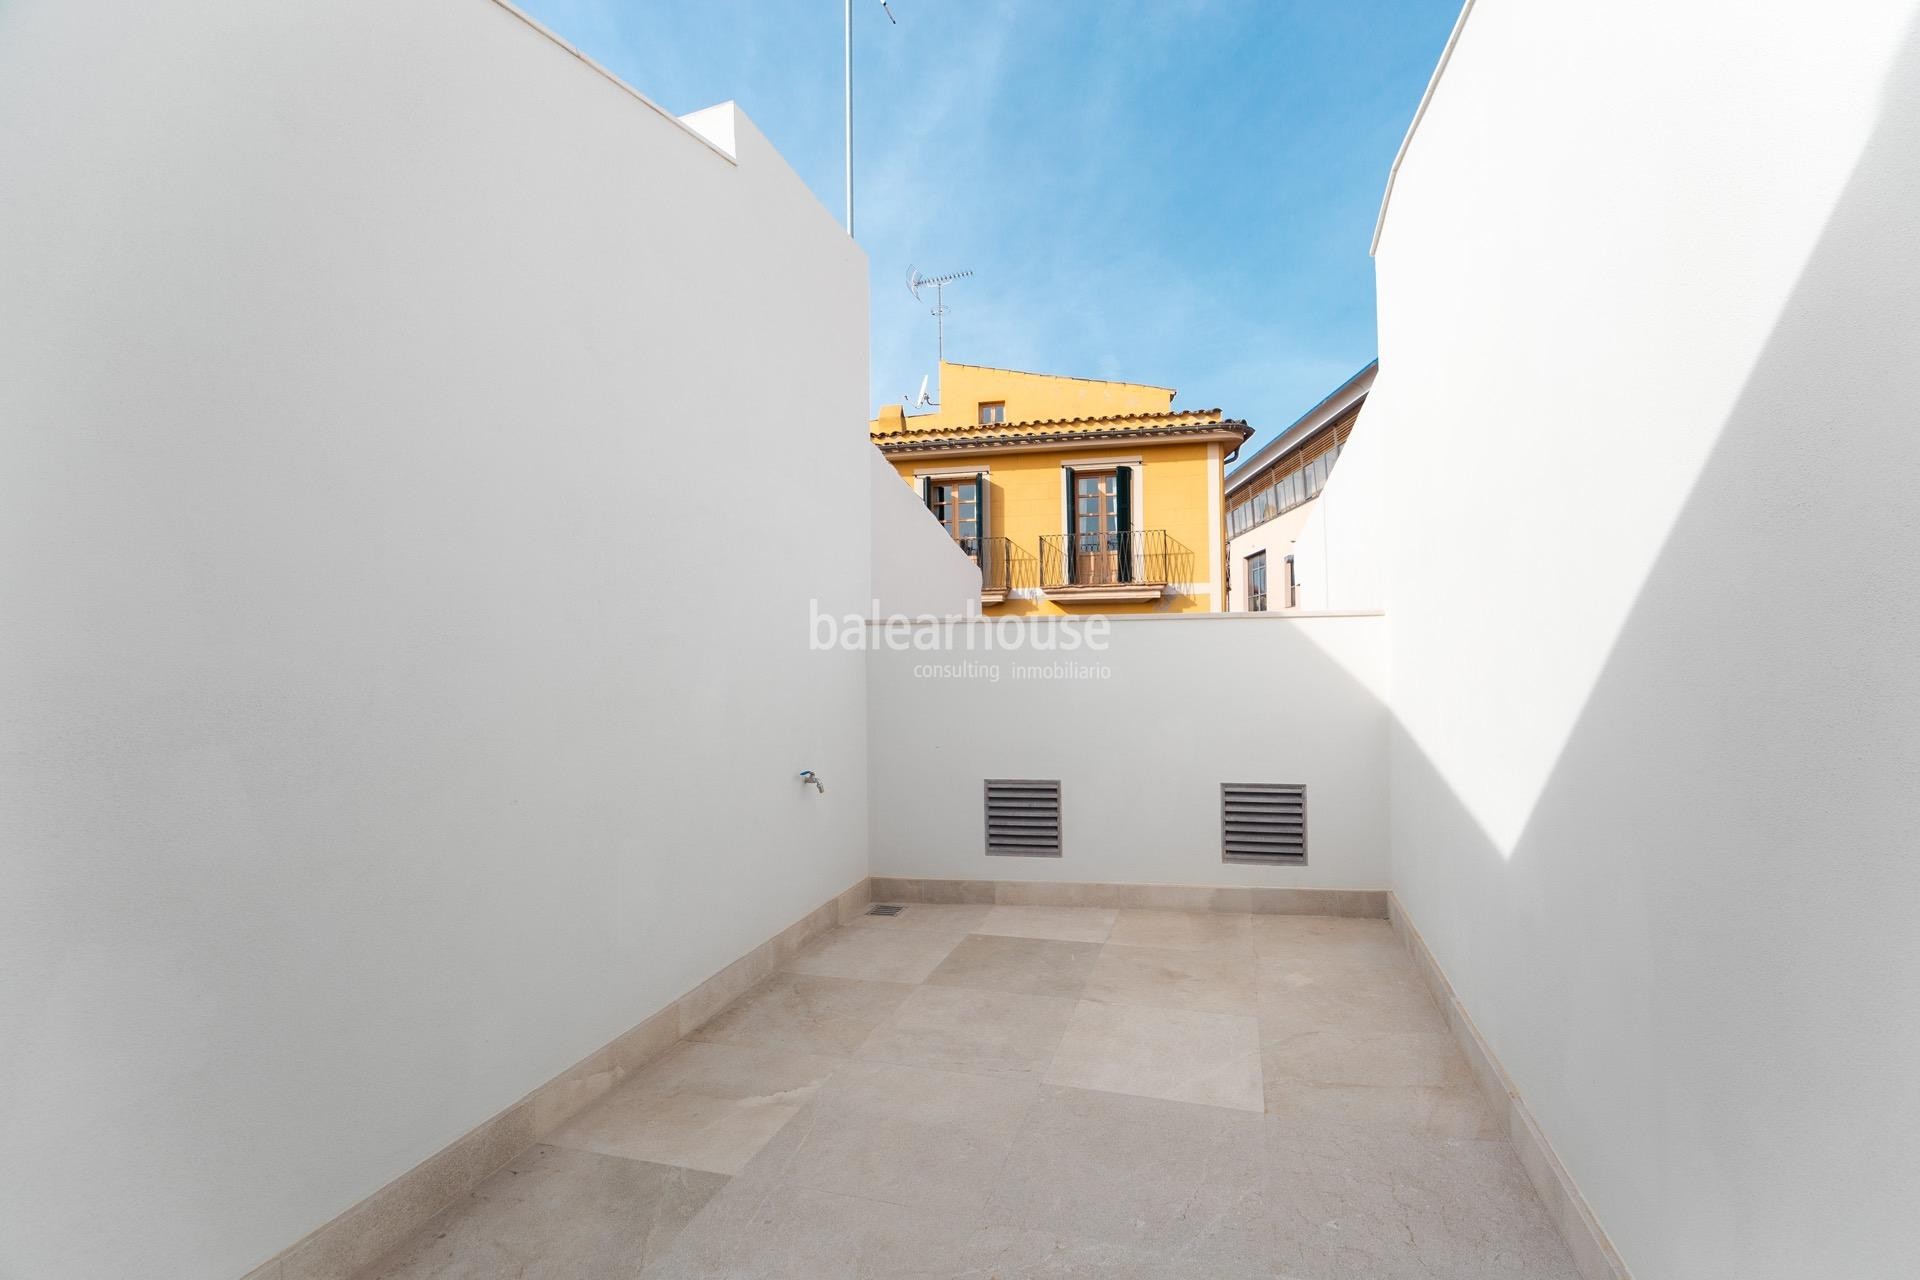 Design und Tradition in diesem exklusiven neuen Haus im historischen Zentrum von Palma